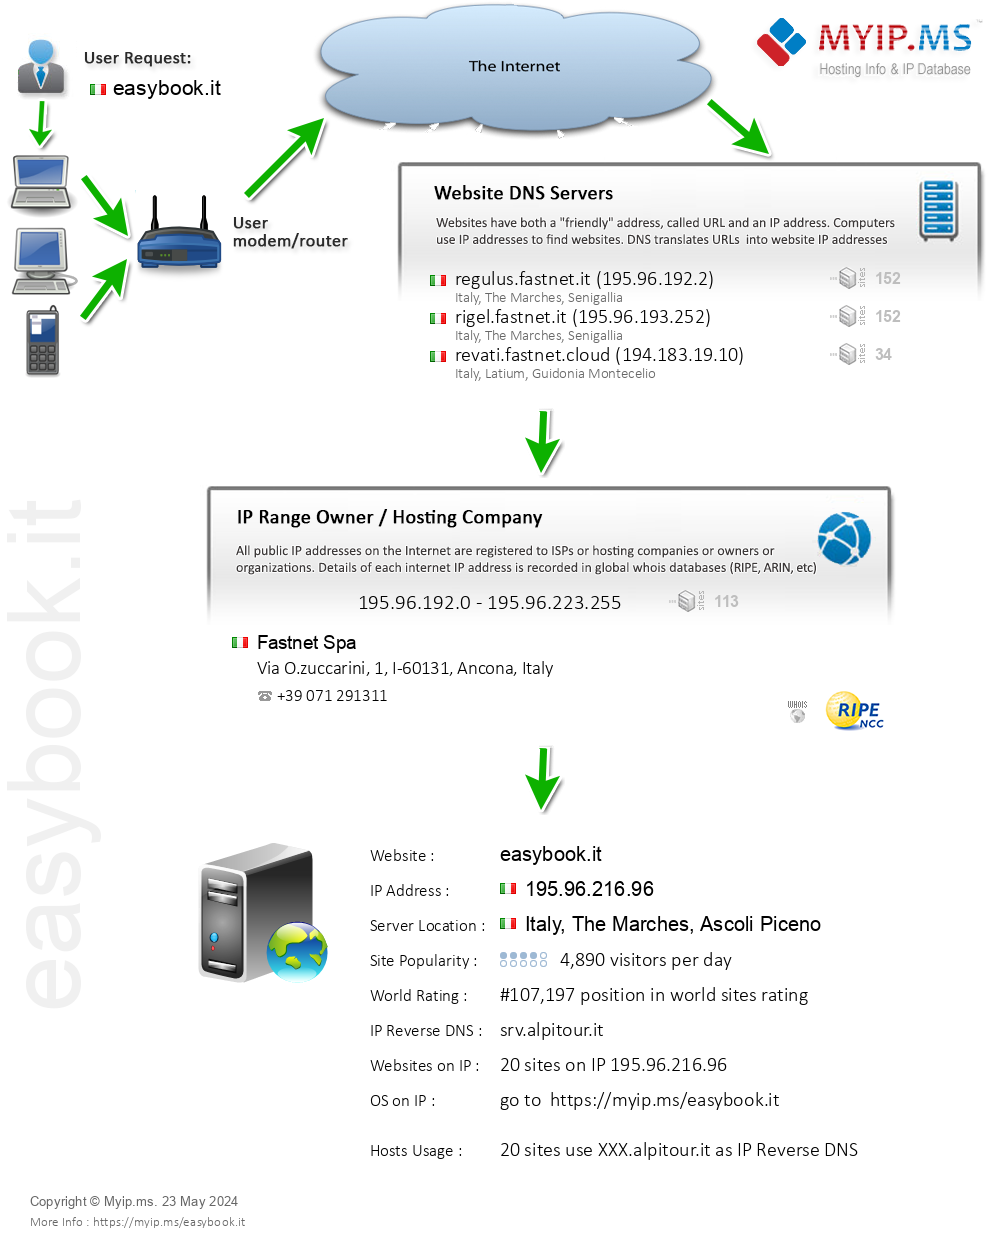 Easybook.it - Website Hosting Visual IP Diagram